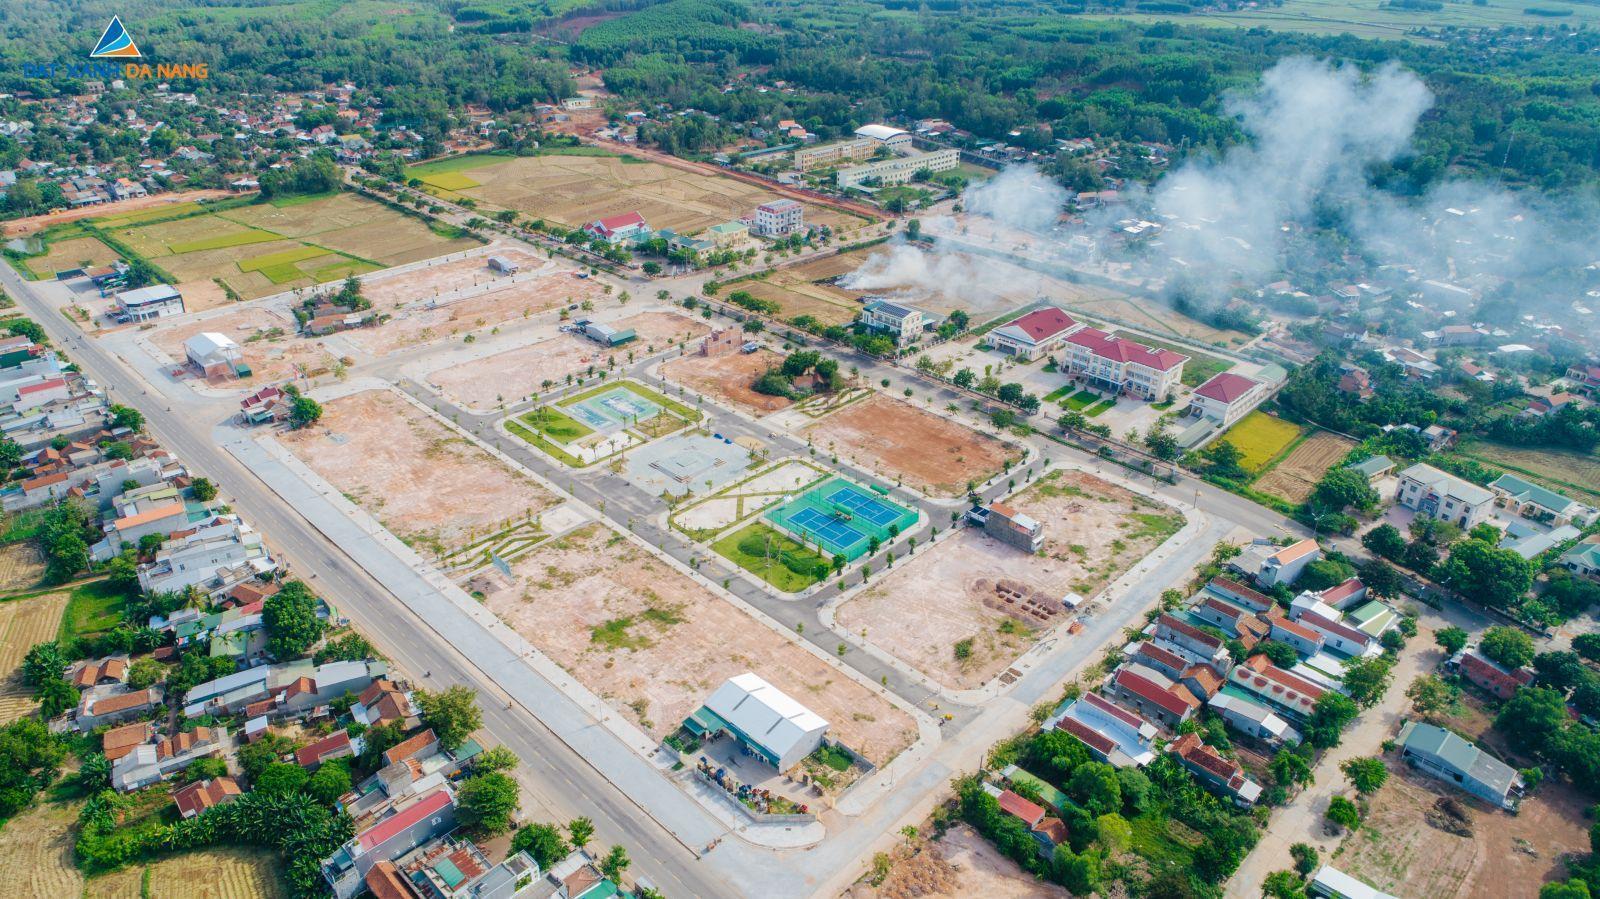 [GÓC CẬP NHẬT] DỰ ÁN SUNFLORIA CITY THÁNG 09/2019 - Viet Nam Smart City